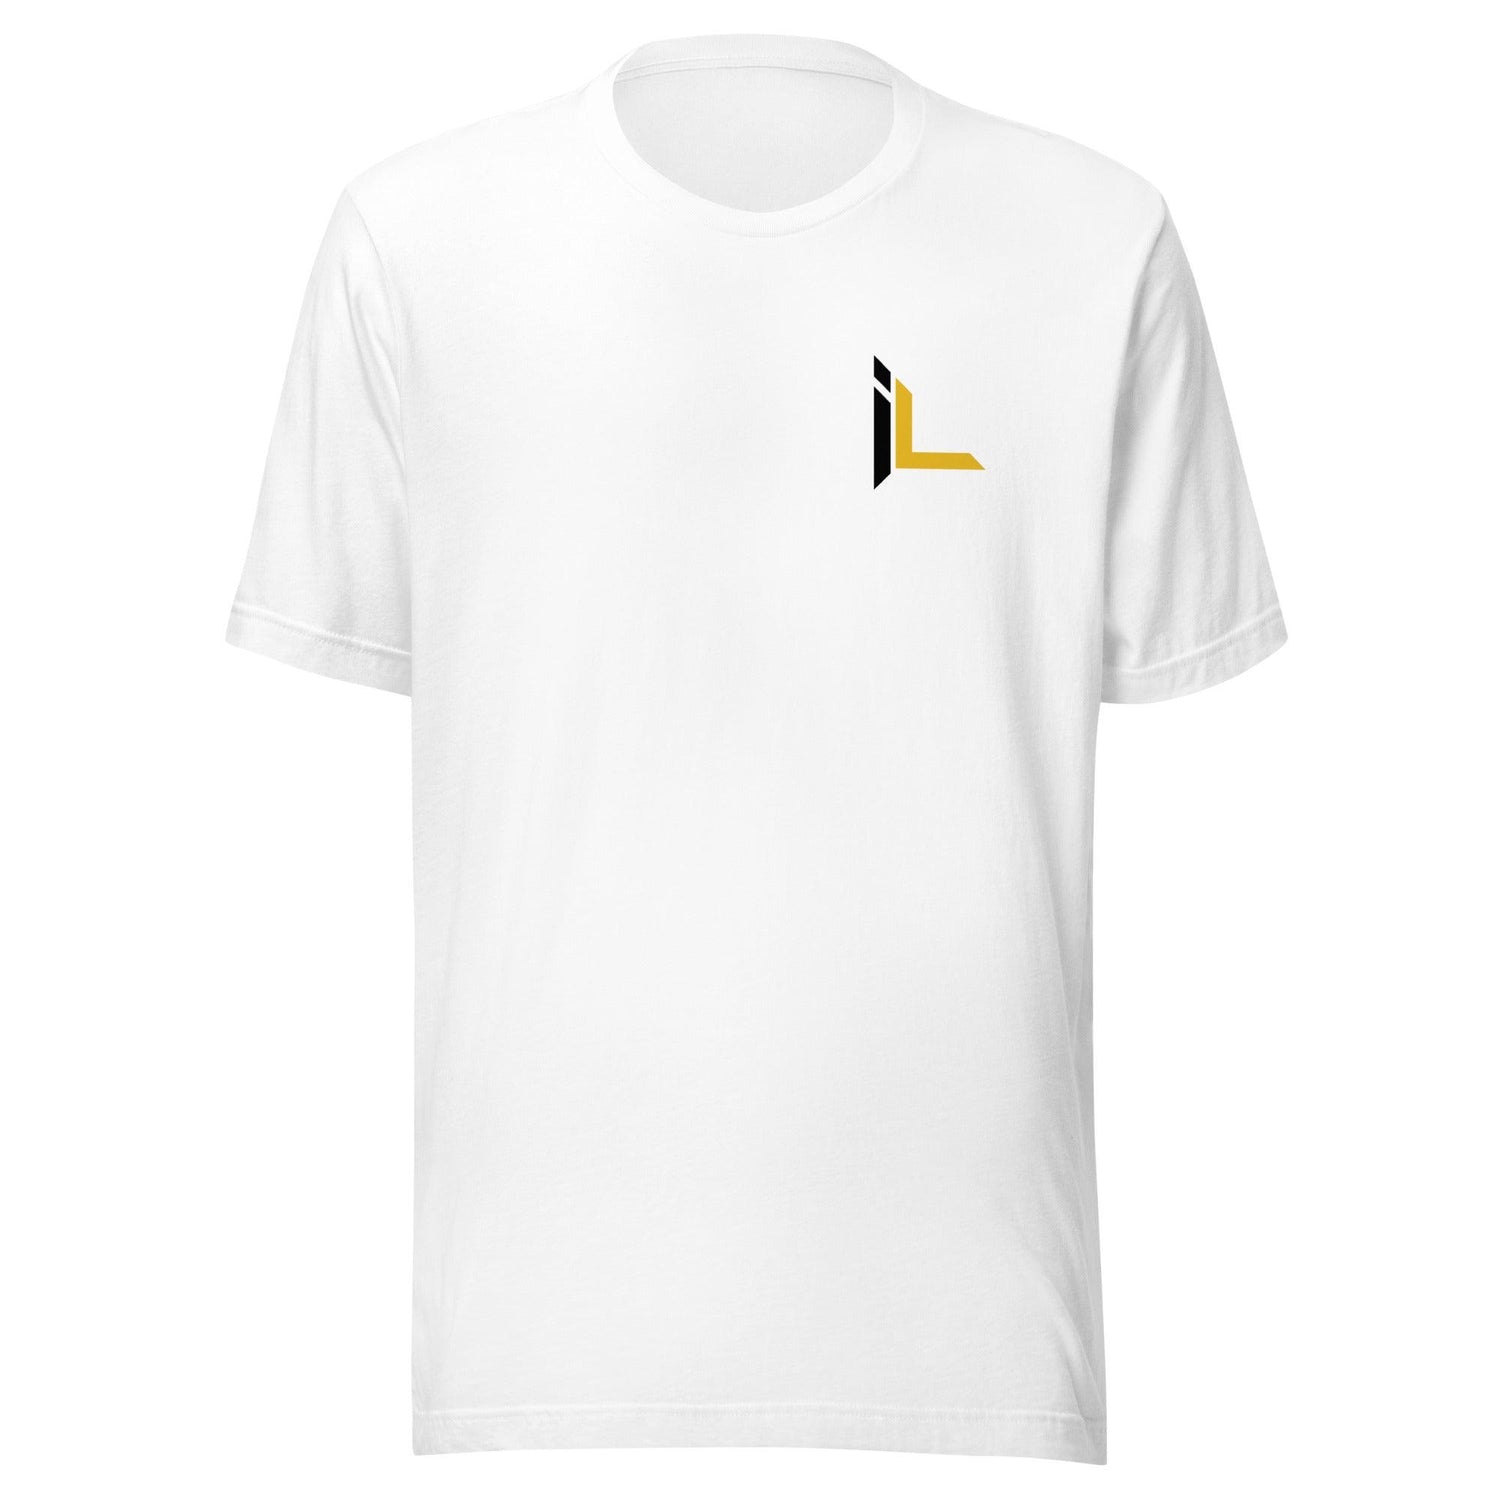 Isaiah Landry "Essential" t-shirt - Fan Arch